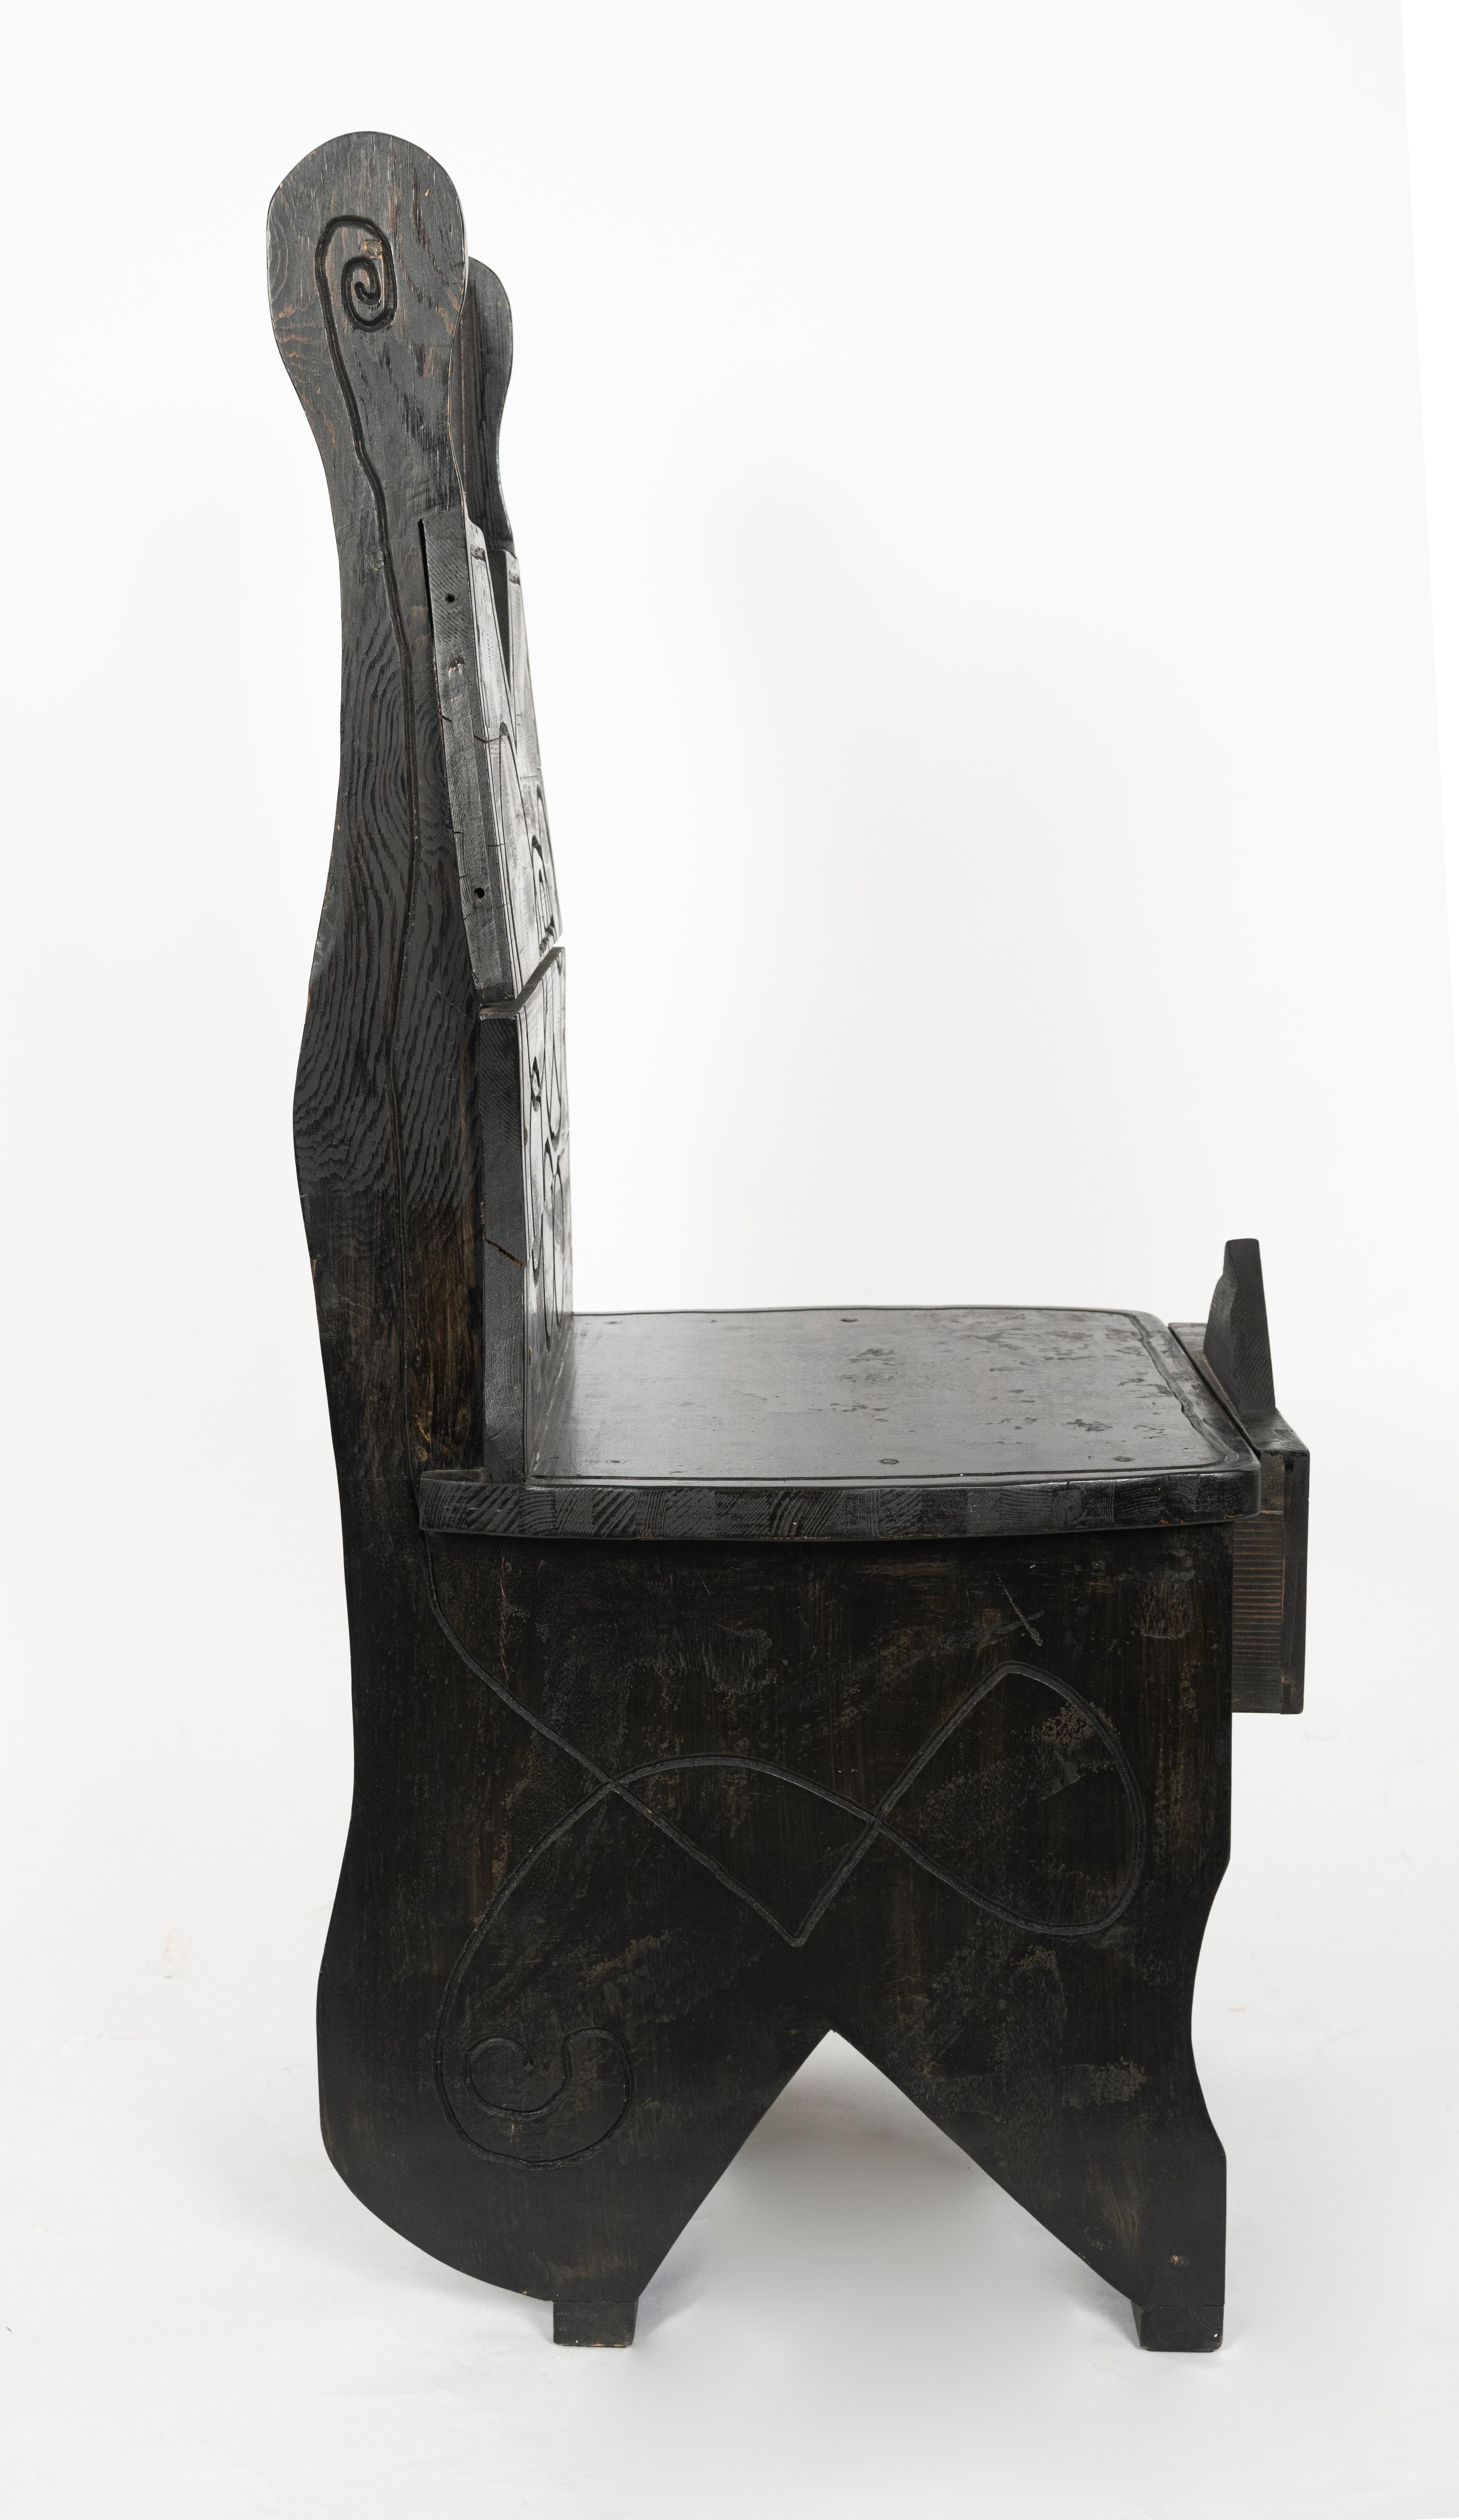 Ein tschechischer Schreibtisch mit Stuhl im kubistischen Stil aus ebonisierter Eiche mit polychromen Details.

Zusätzliche Abmessungen:
Schreibtischplatte ist 28,25